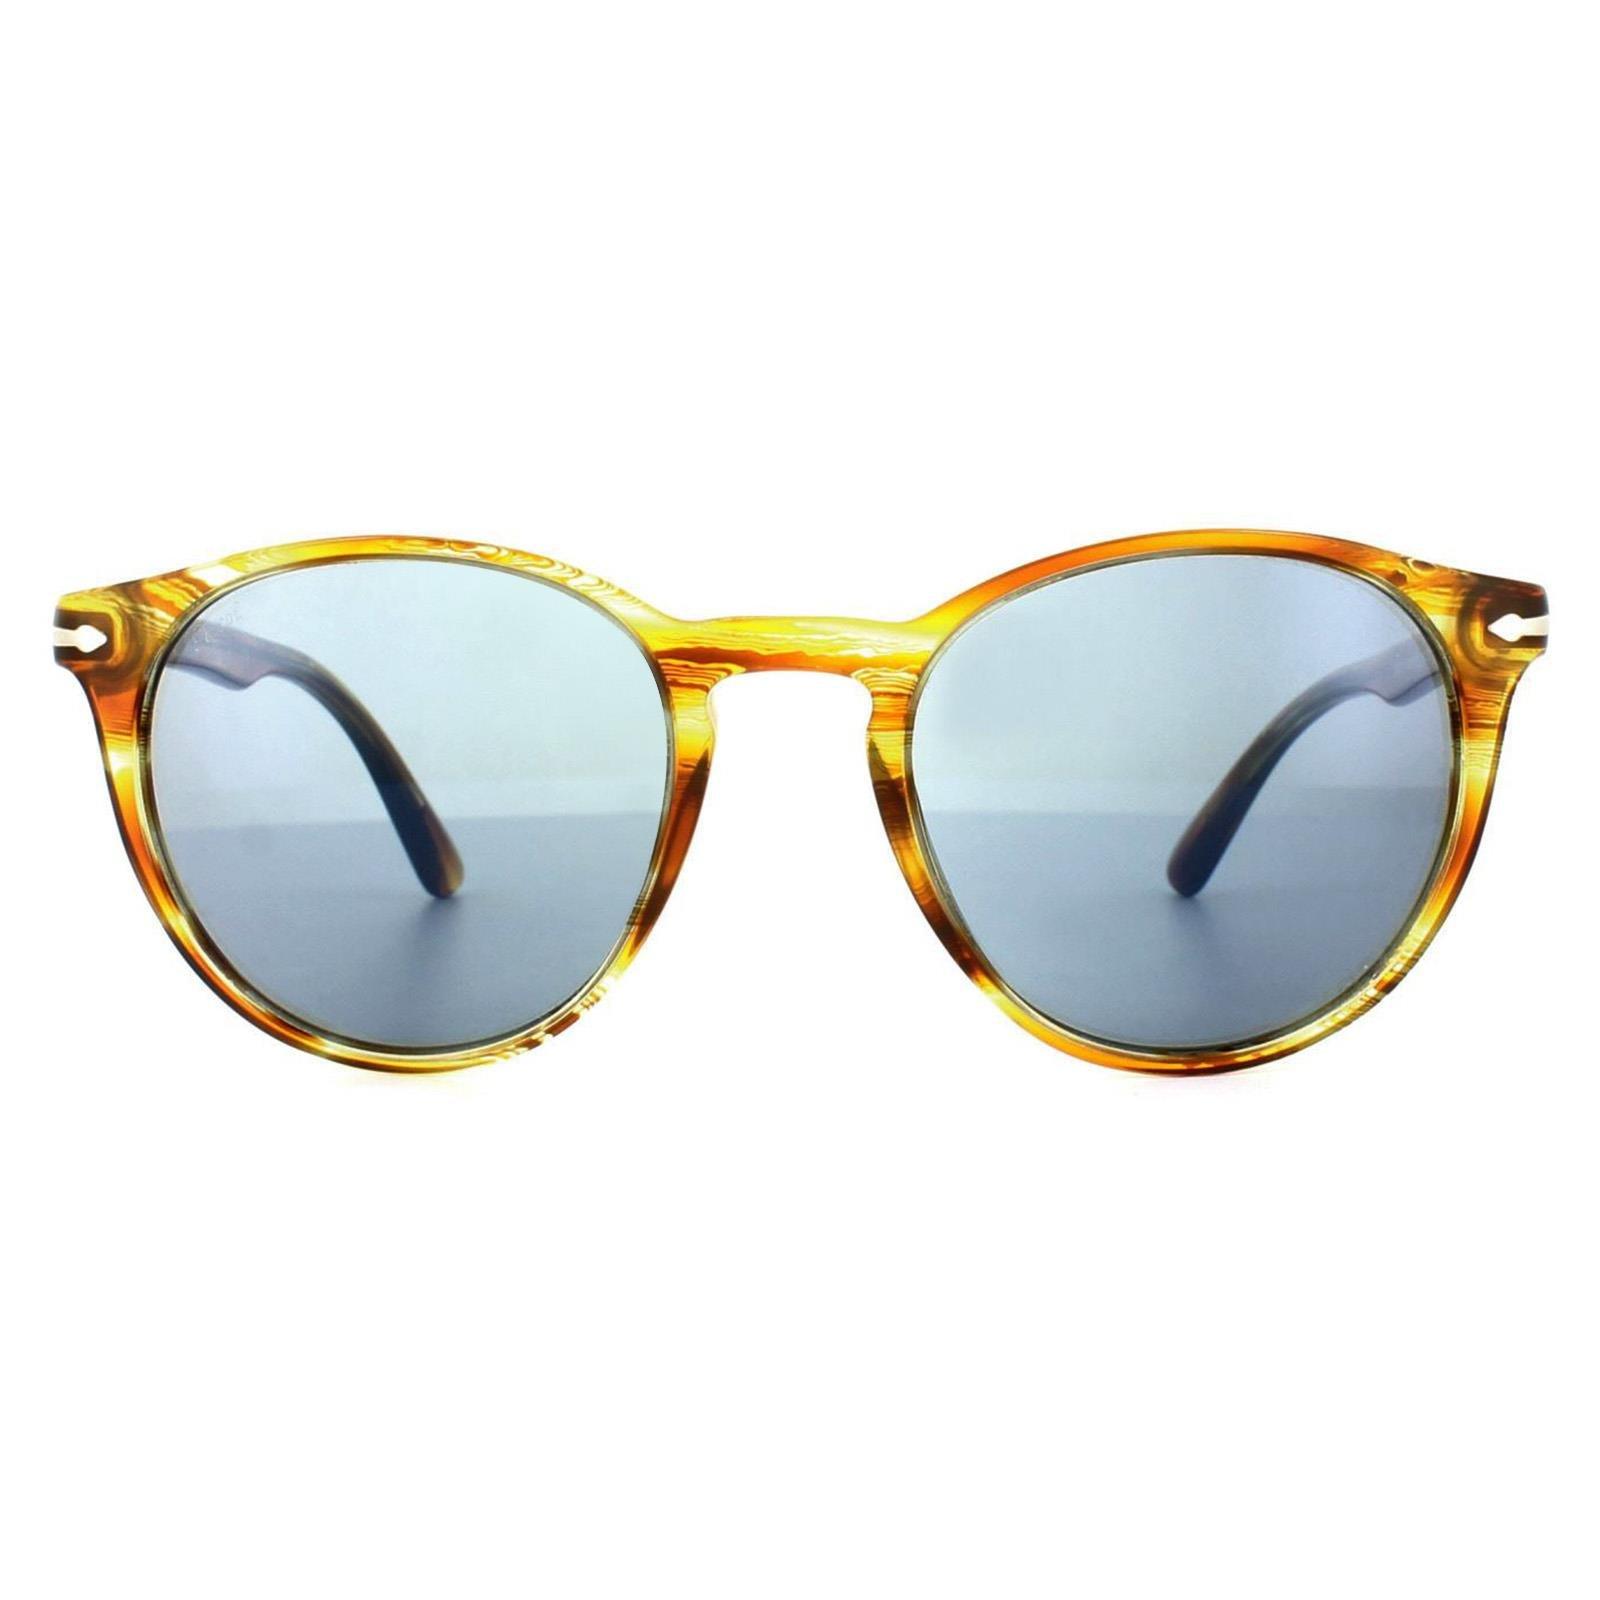 Sunglasses | Round Brown Striped Yellow Blue Anti-Glare Sunglasses | Persol